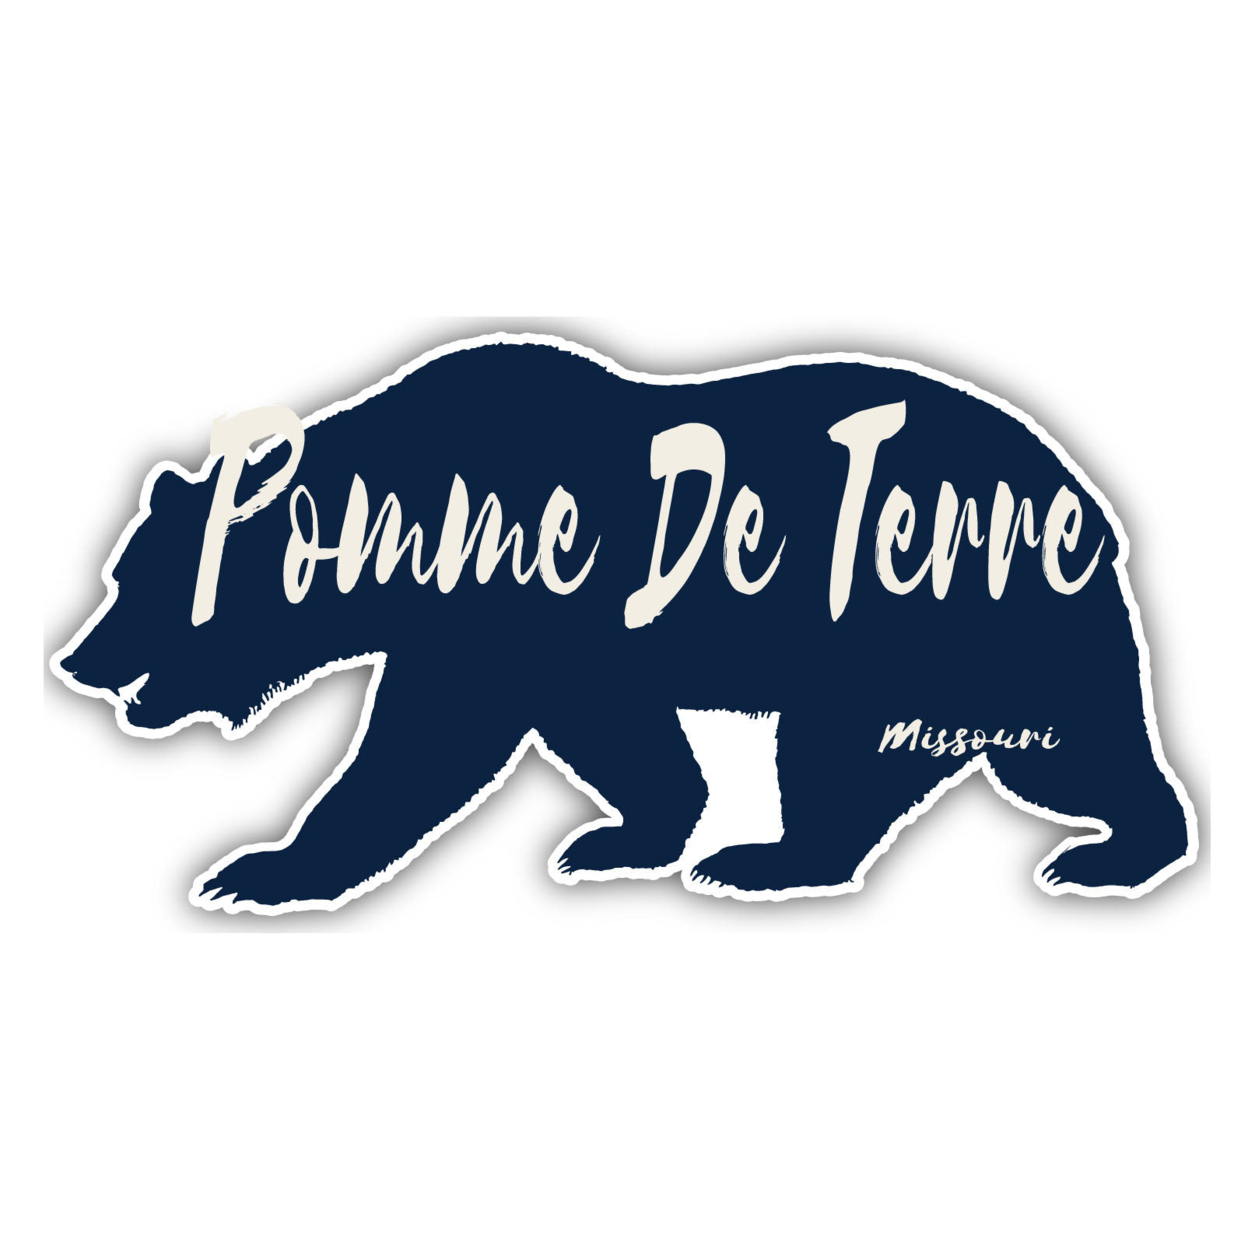 Pomme De Terre Missouri Souvenir Decorative Stickers (Choose Theme And Size) - Single Unit, 4-Inch, Bear